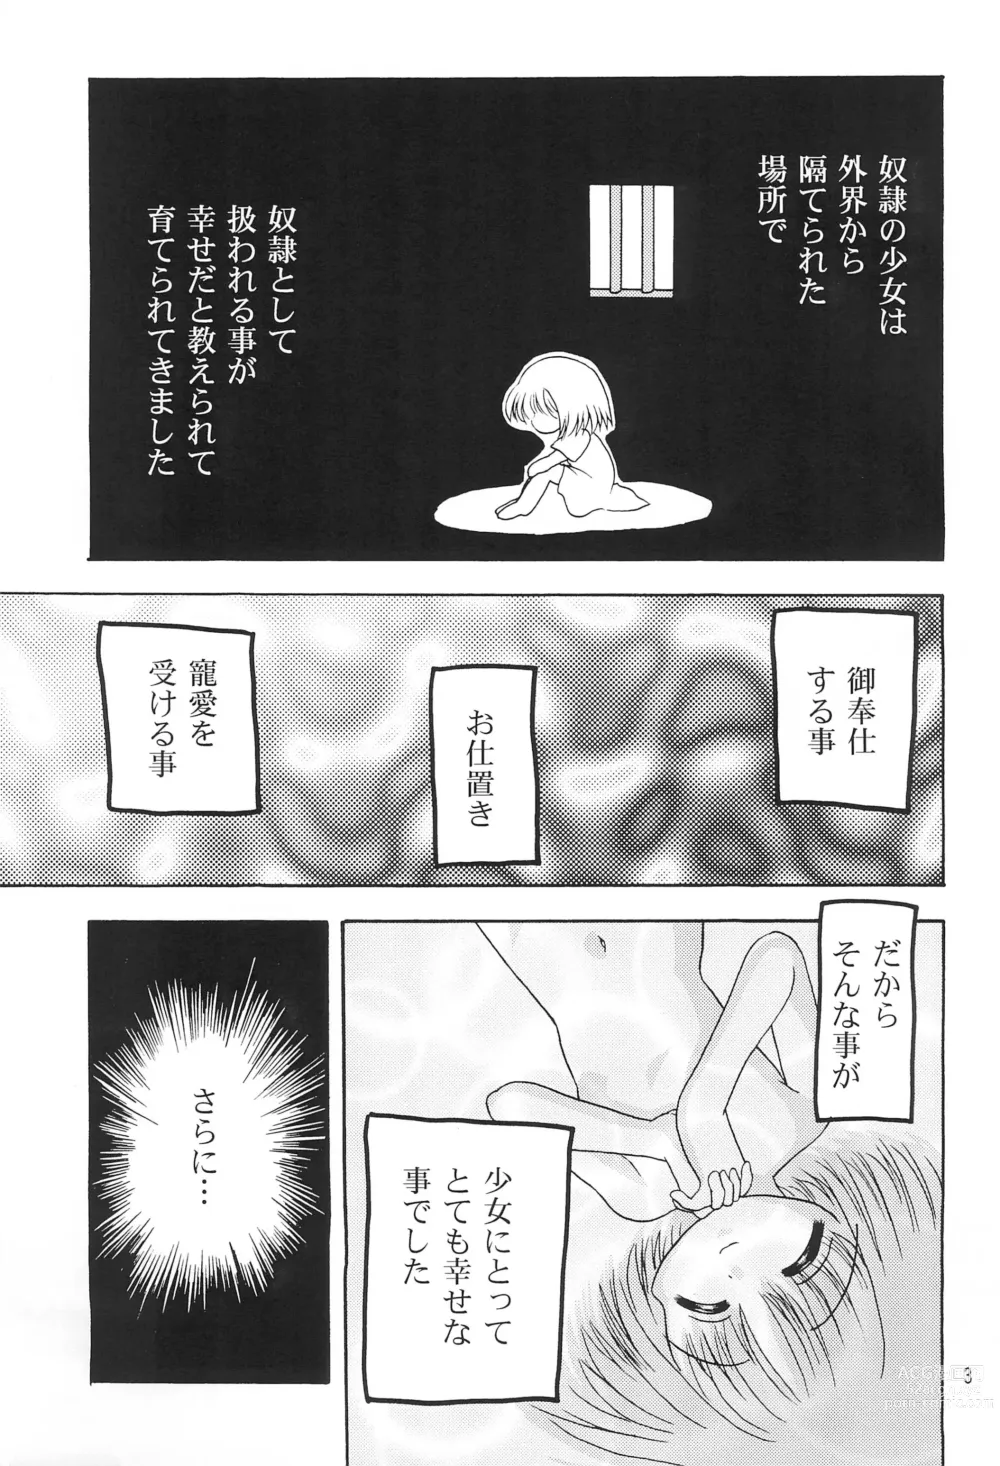 Page 5 of doujinshi Kokuin -Chouai-